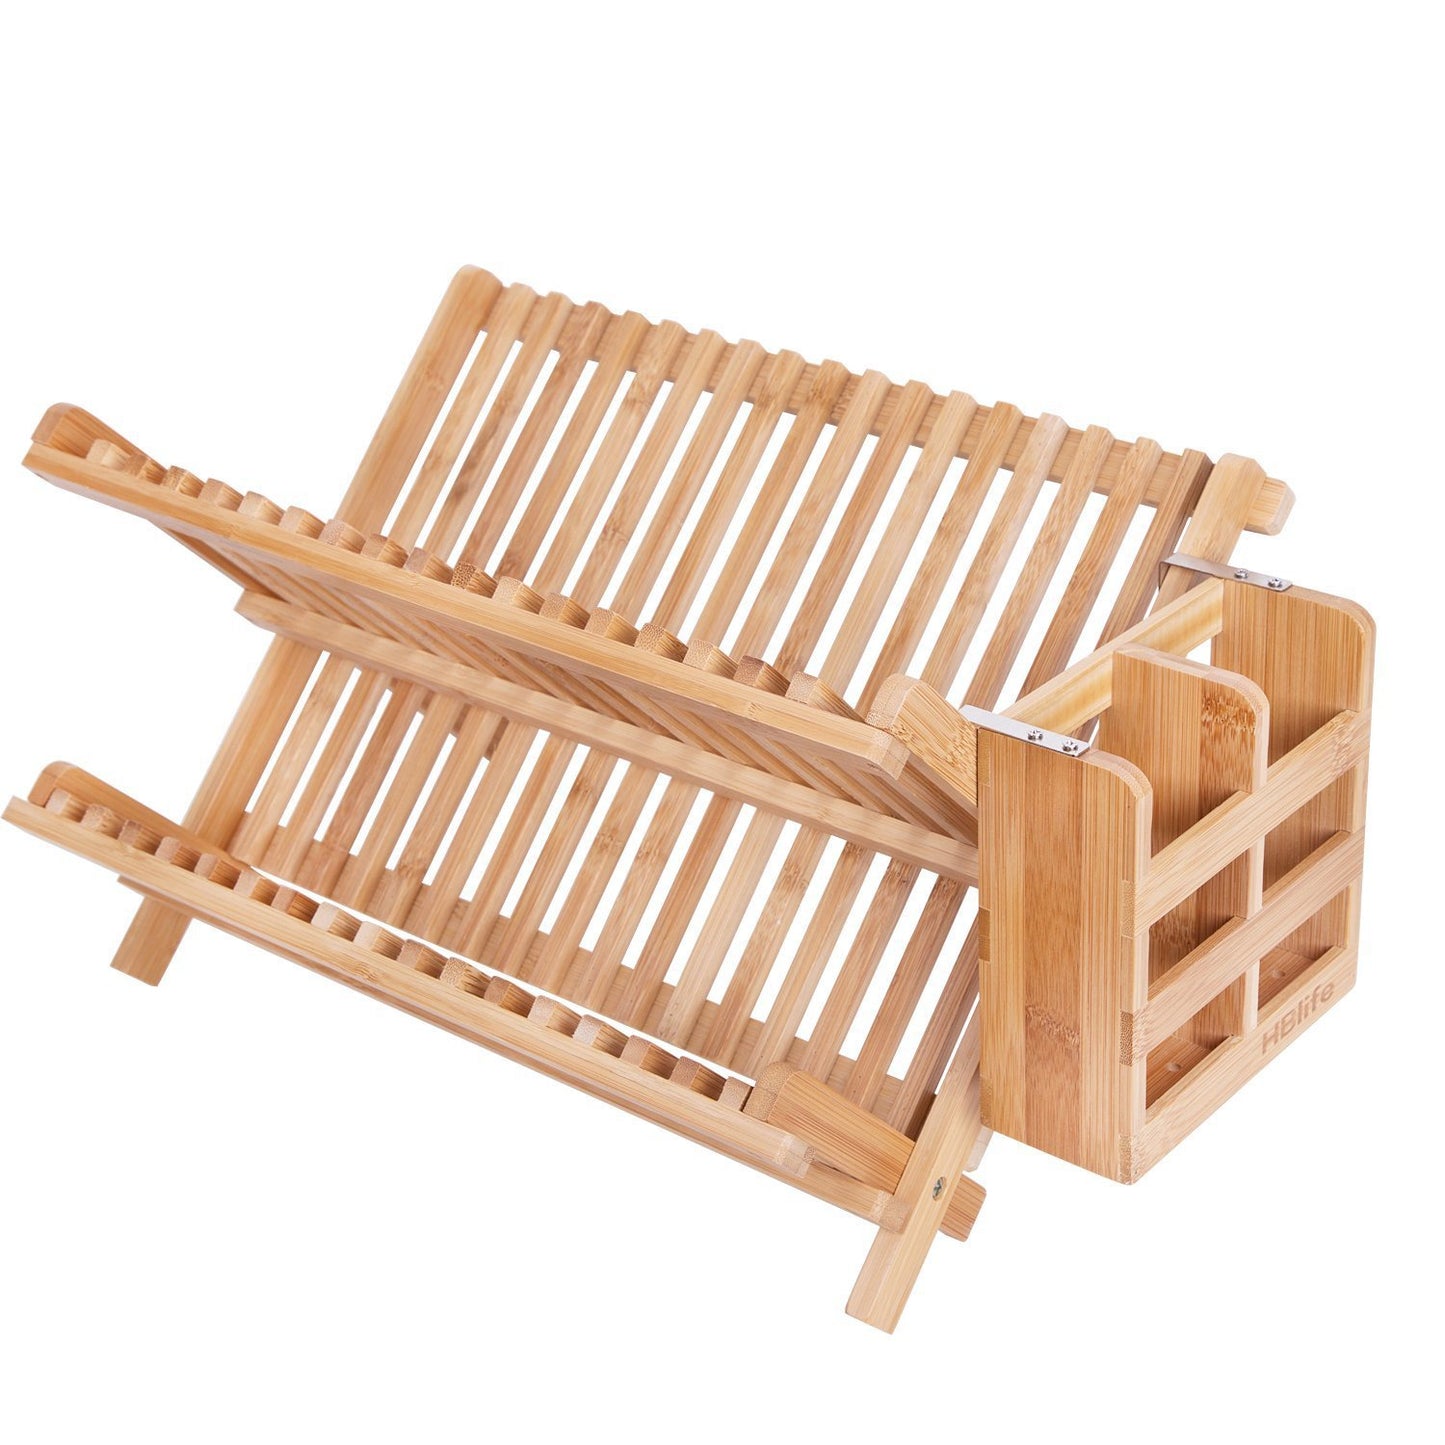 Wooden bamboo dish holder, drying rack with utensil holder - Forplanetsake